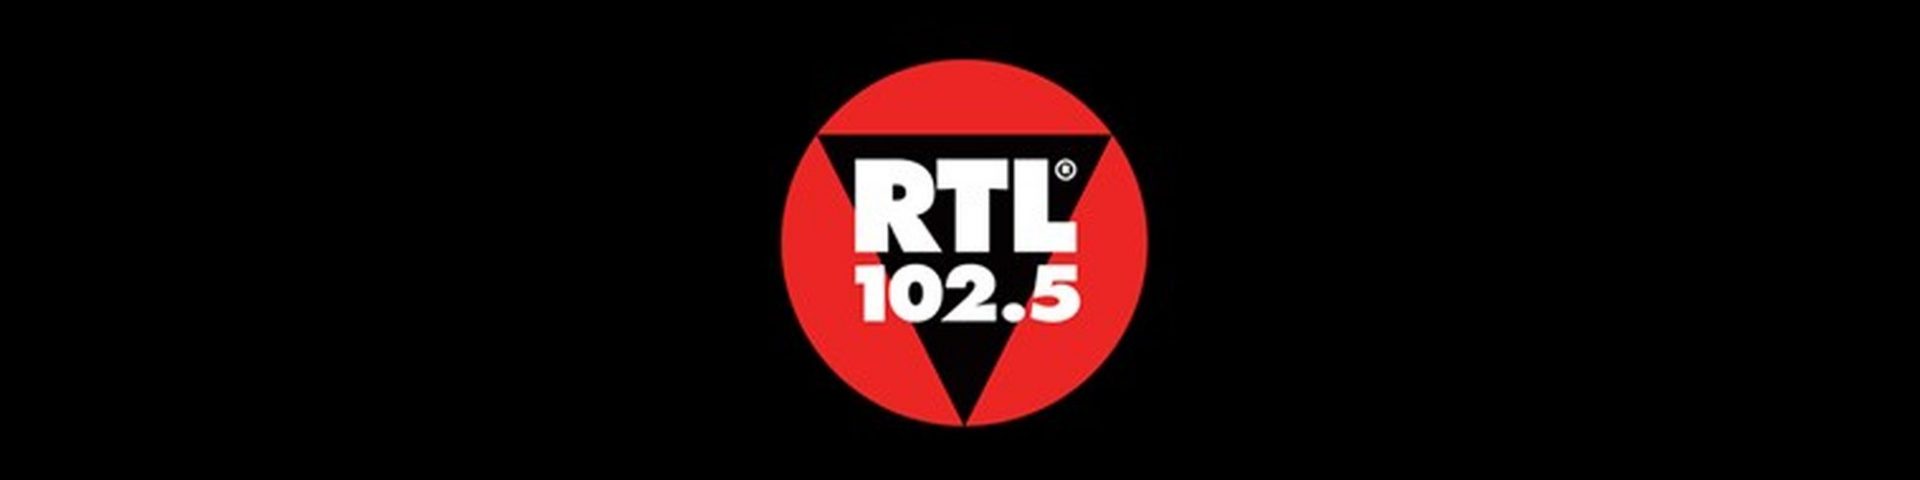 Lorenzo Suraci, presidente di RTL 102.5: “Svizzera e USA copiano il nostro modello di radiovisione”